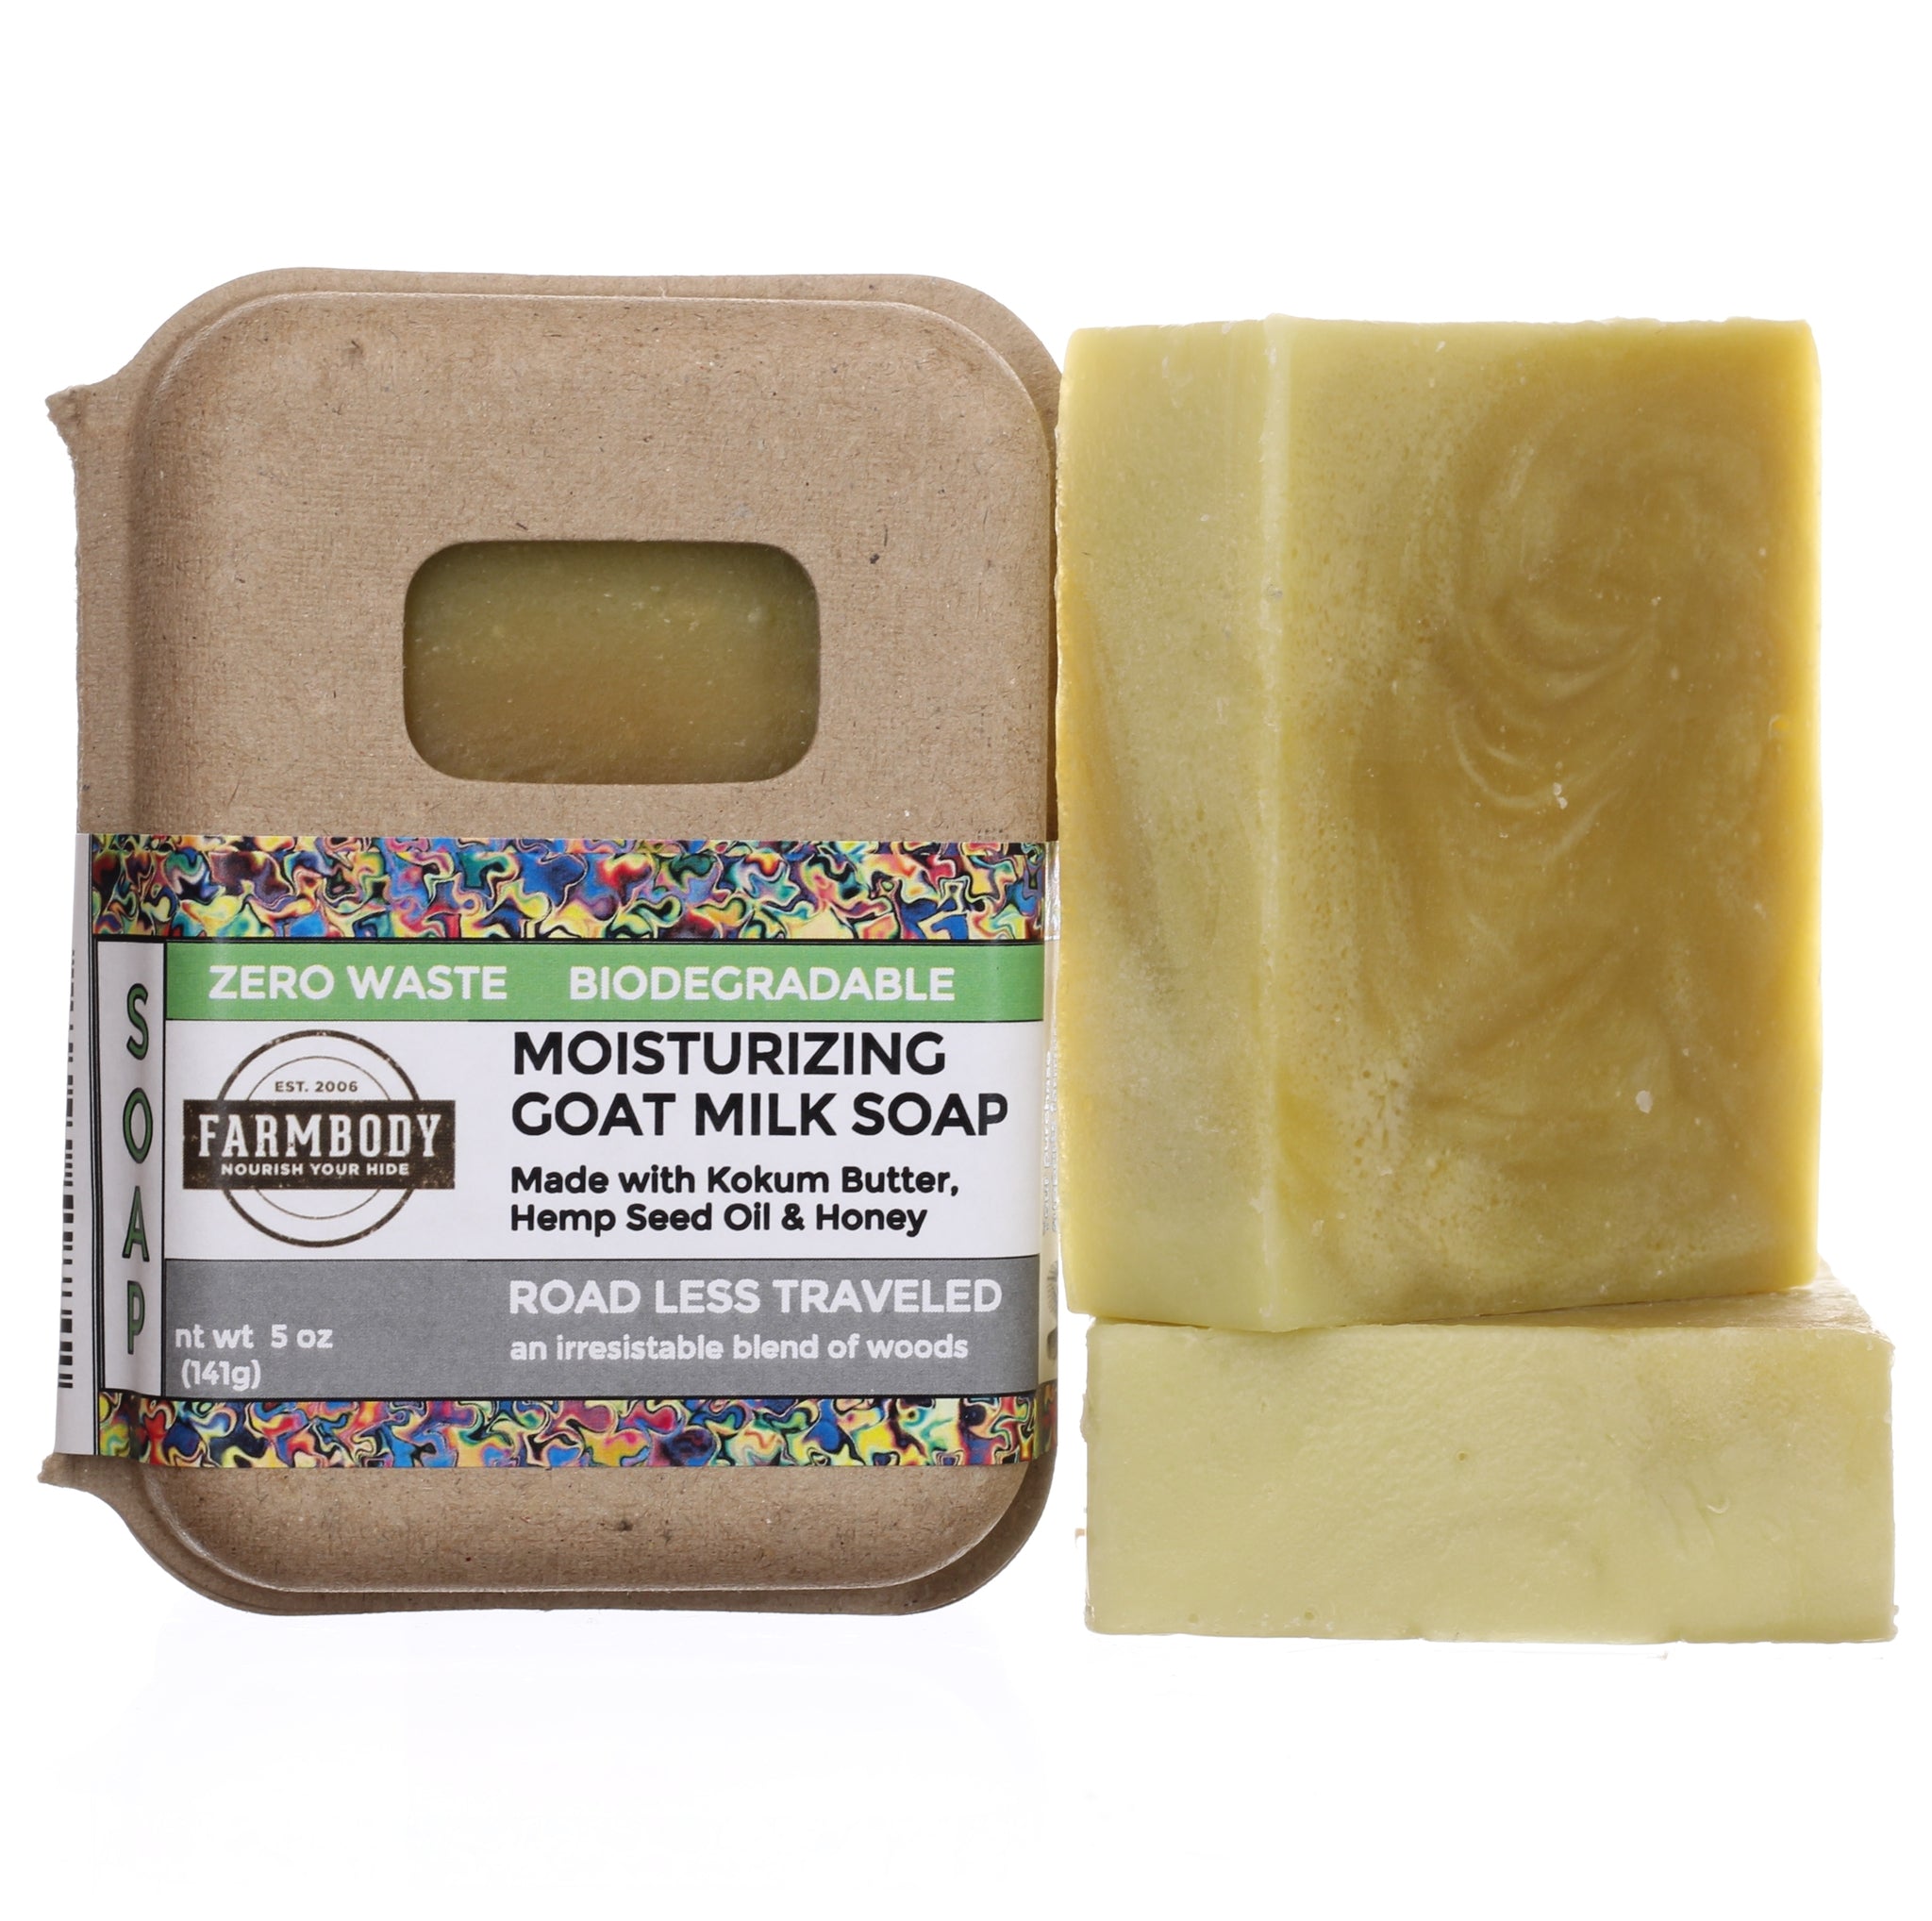 Nurme Goat's Milk Soap for Sensitive Skin 100g 